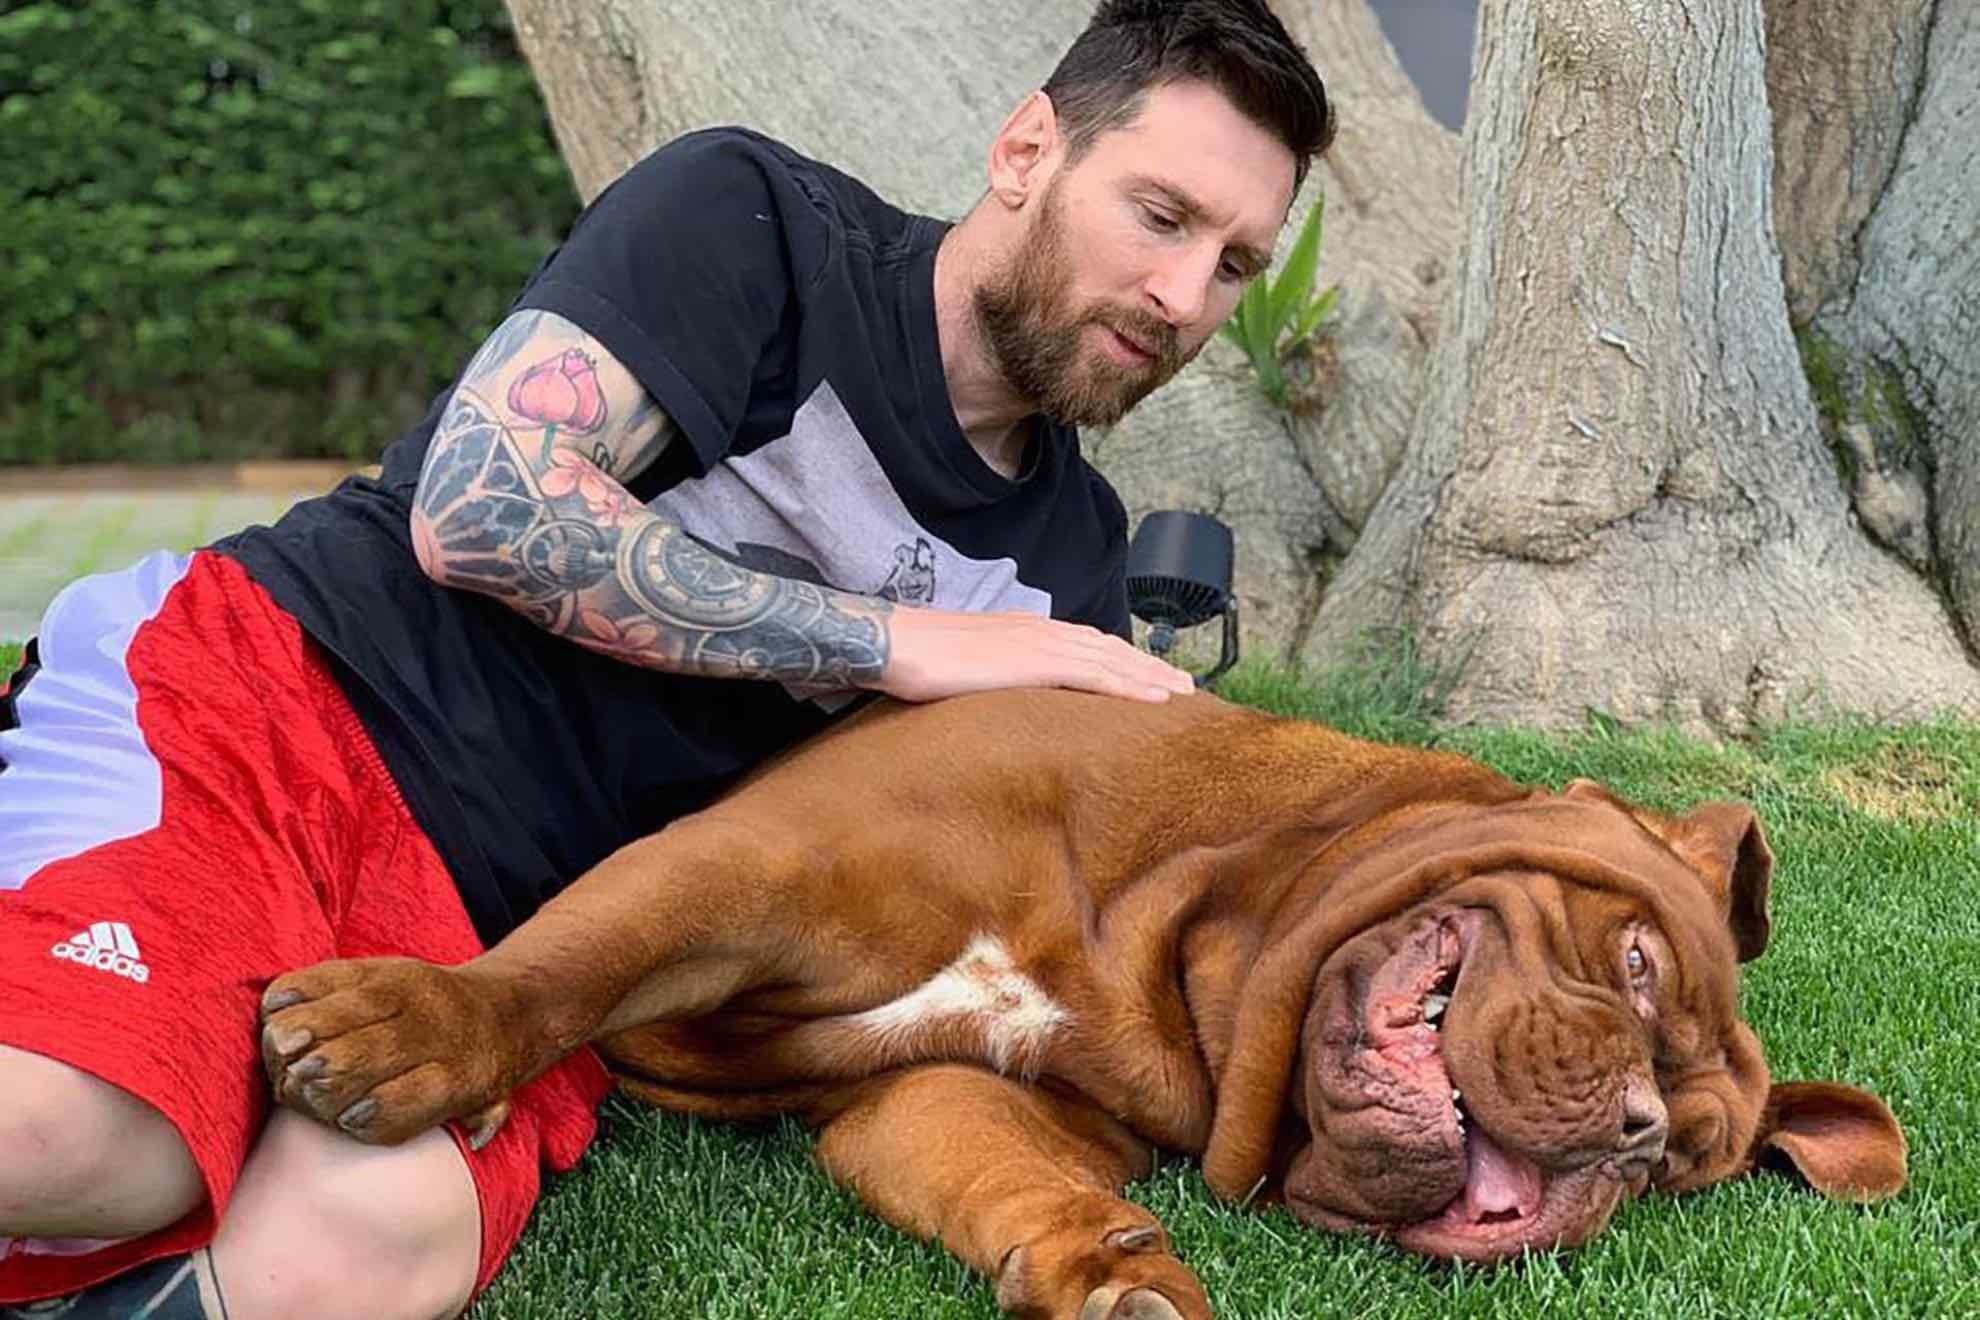 Leo Messi and his dog Hulk